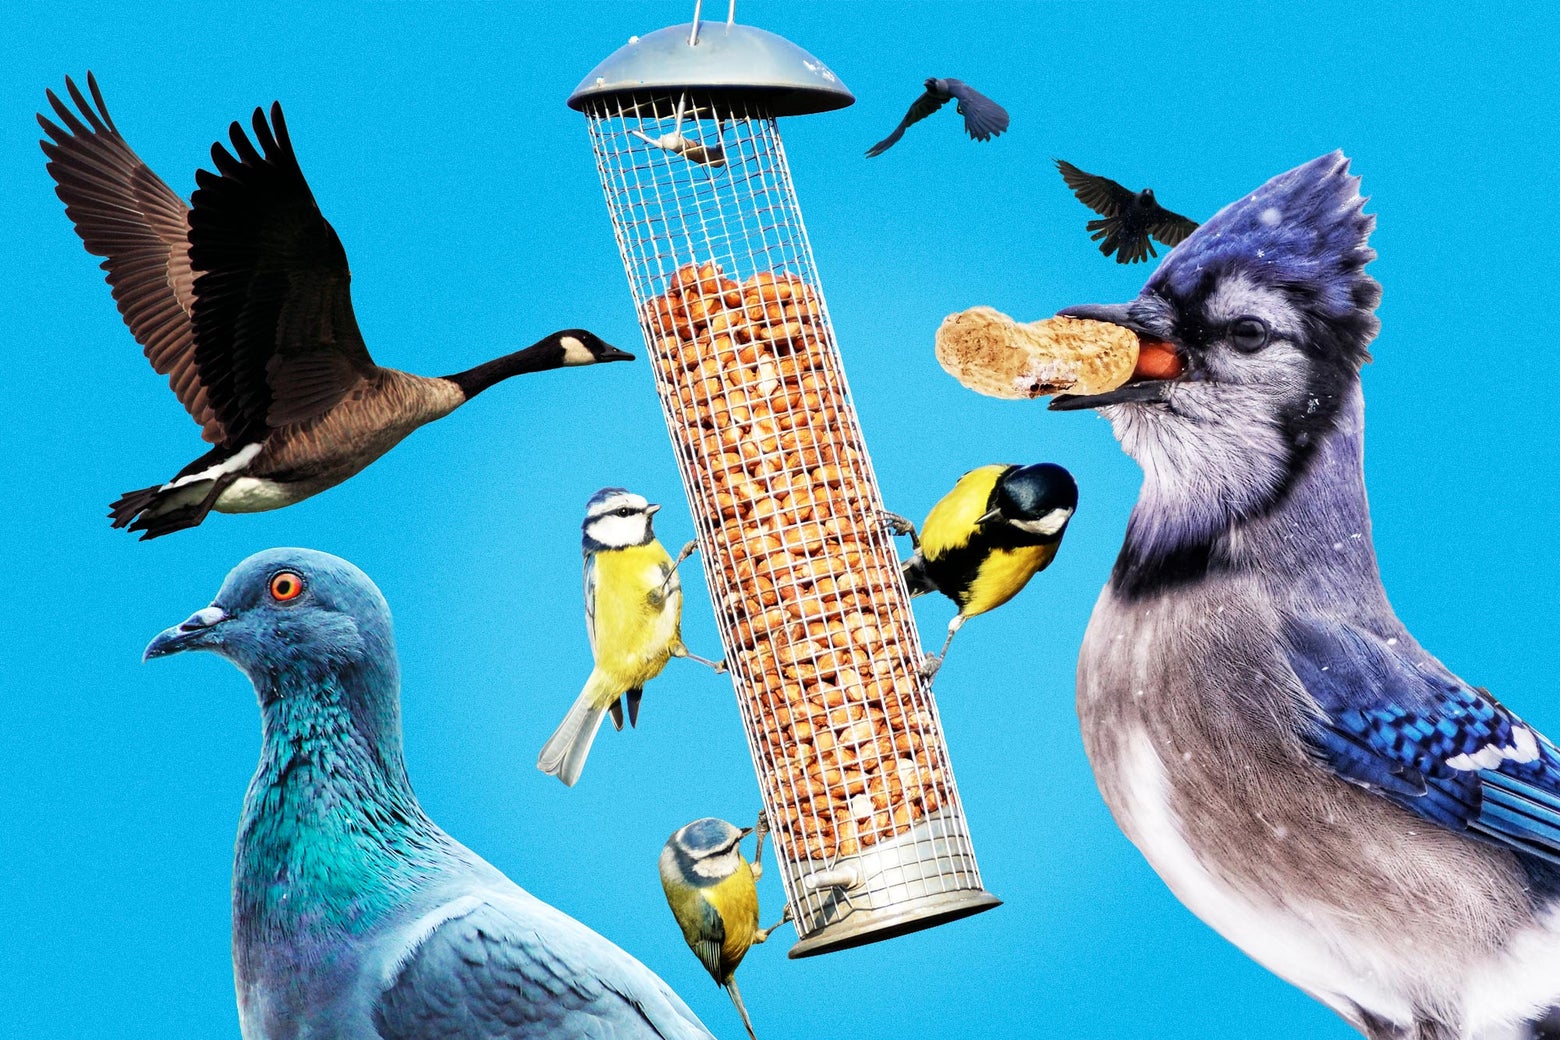 How to set up a bird feeder so it actually helps birds.